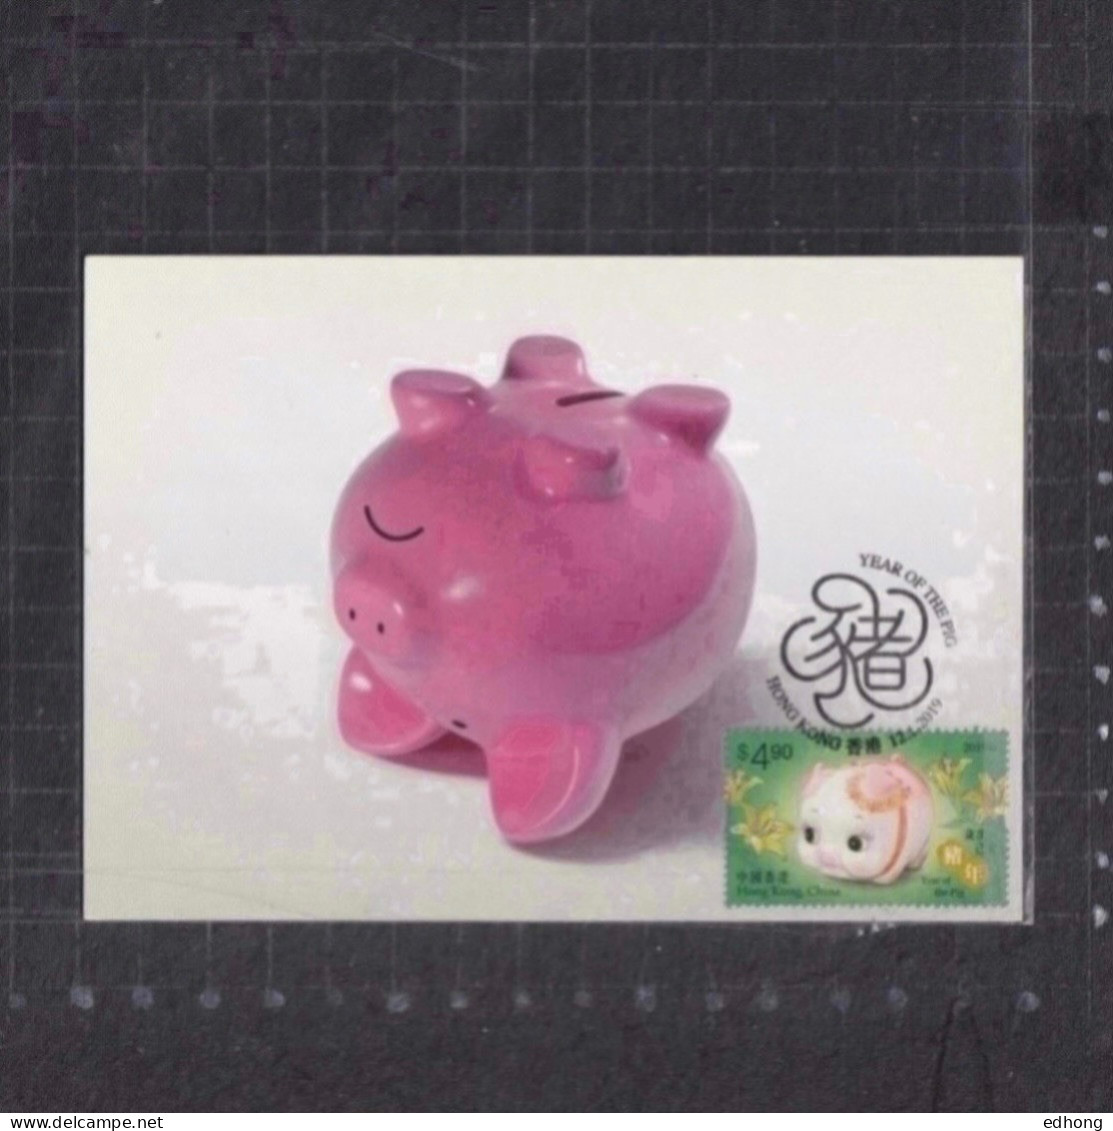 [Carte Maximum / Maximum Card / Maximumkarte] 3 X Hong Kong 2019 | Year Of The Pig, Lunar New Year - Maximum Cards